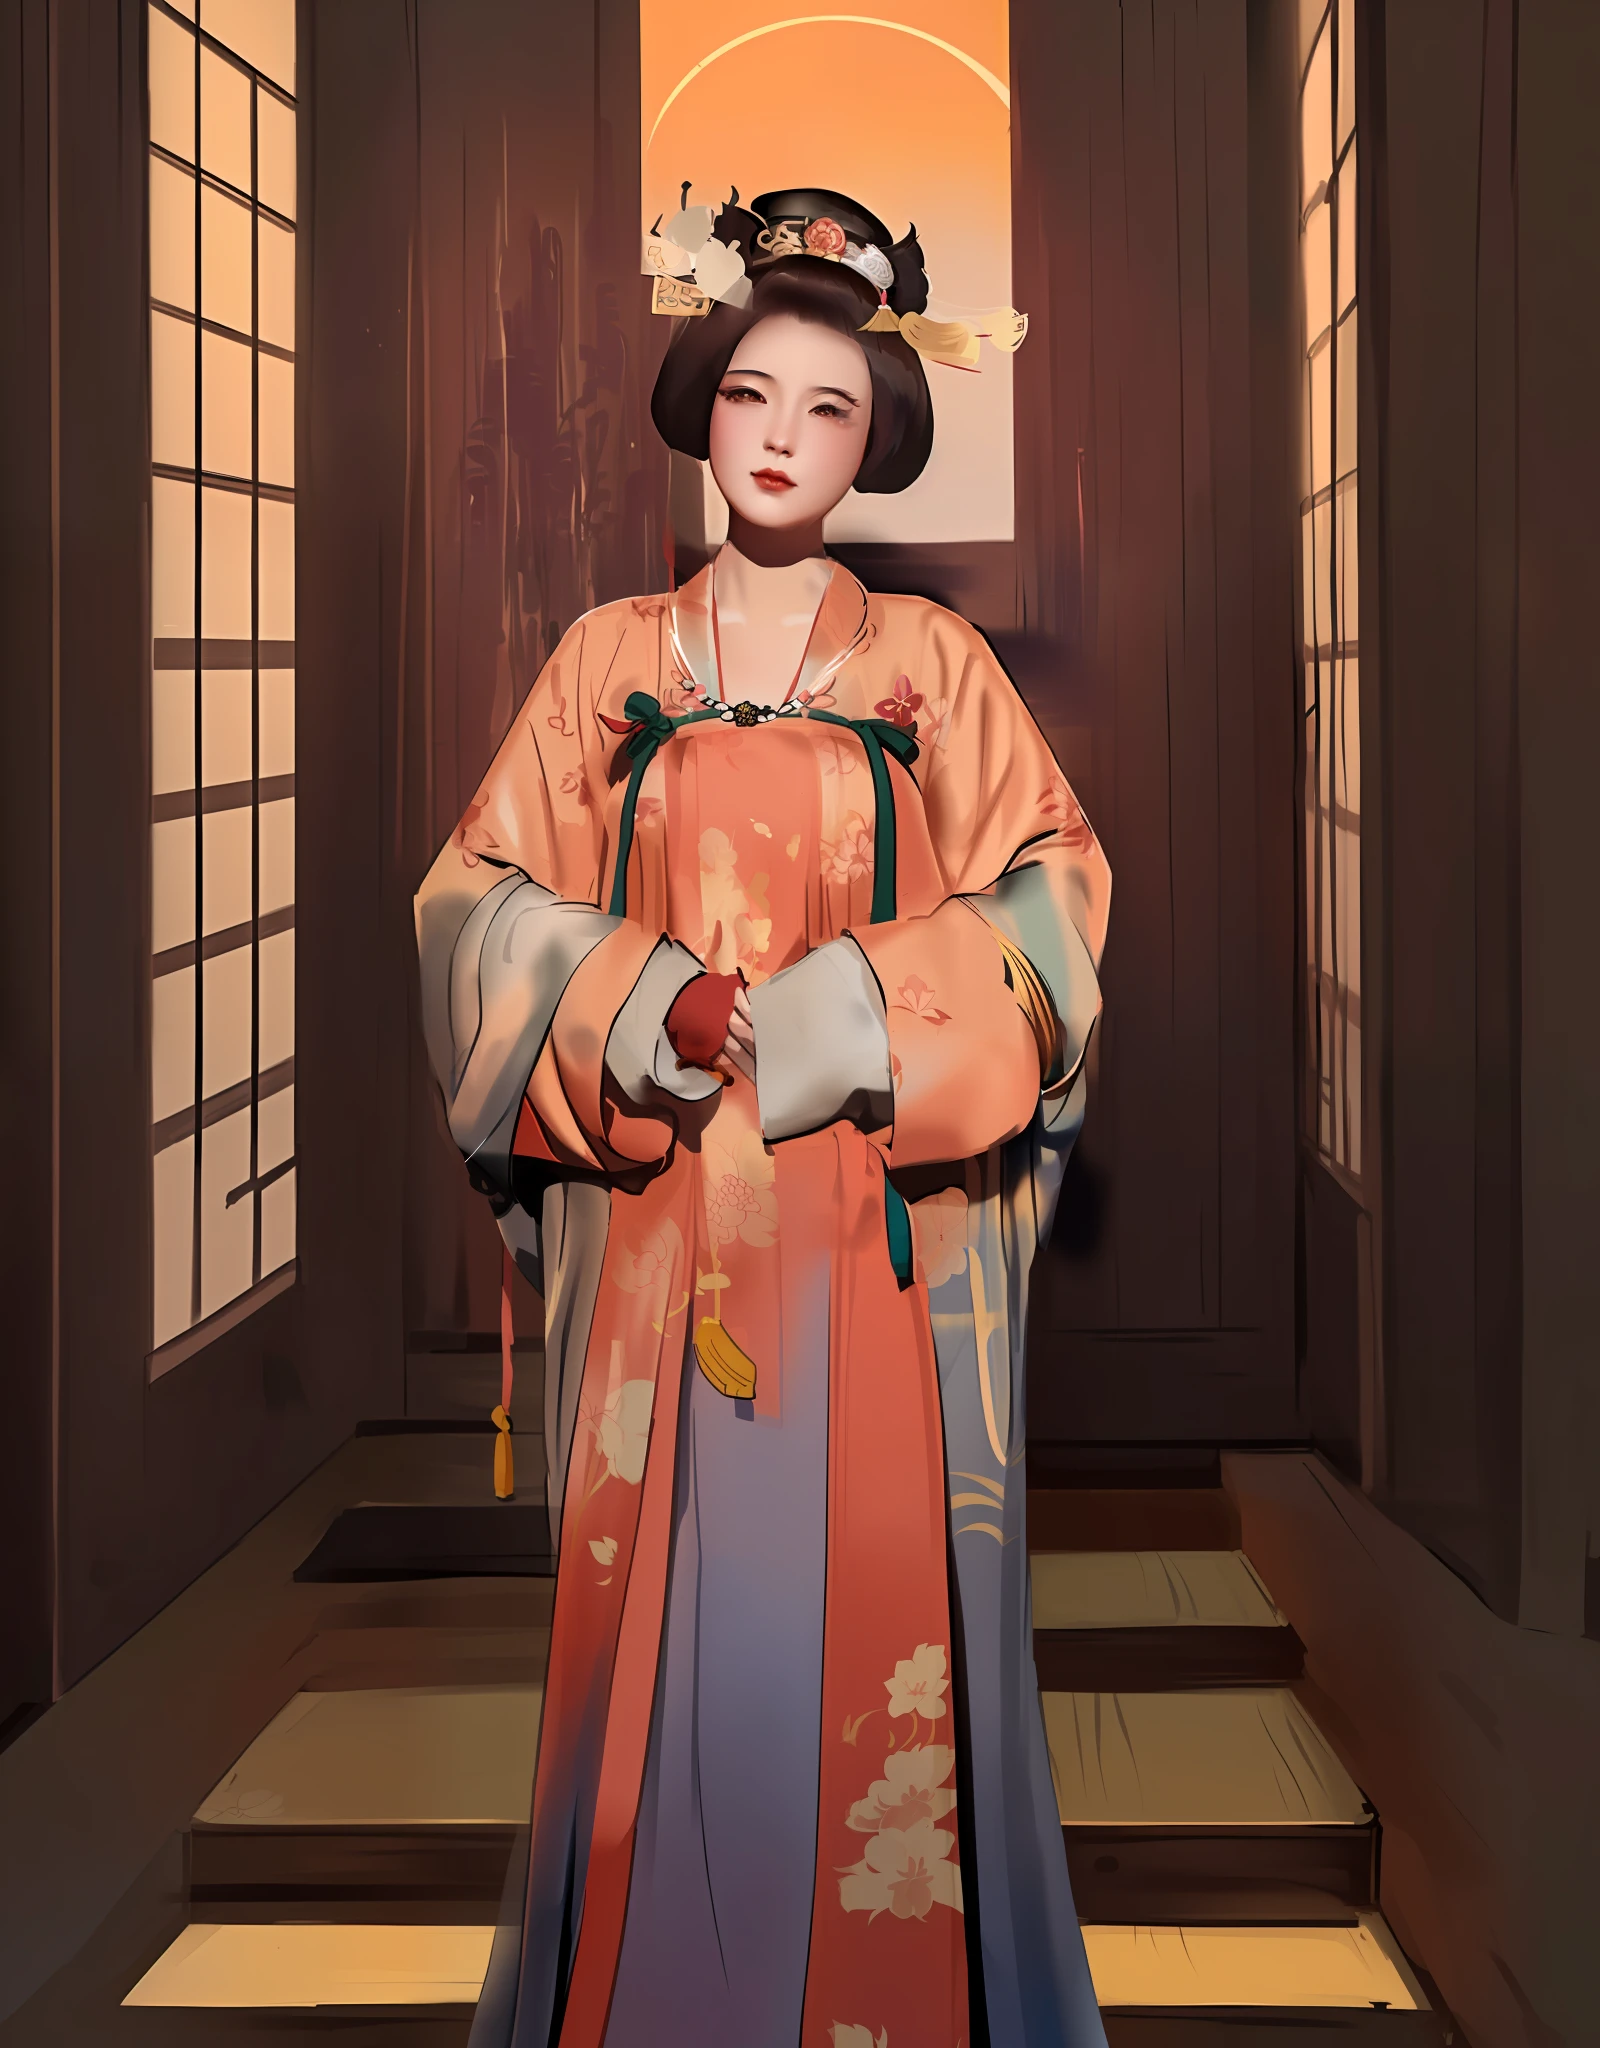 Arafed Frau in einem Kimono-Kleid und Hut posiert für ein Foto, inspiriert von Uemura Shōen, Palast ， Ein Mädchen in Hanfu, artwork in the style of guweiz, chinesische Kaiserin, inspiriert von Wang Meng, inspiriert von Min Zhen, inspiriert von Yun Du-seo, inspiriert von Yun Shouping, inspiriert von Lan Ying